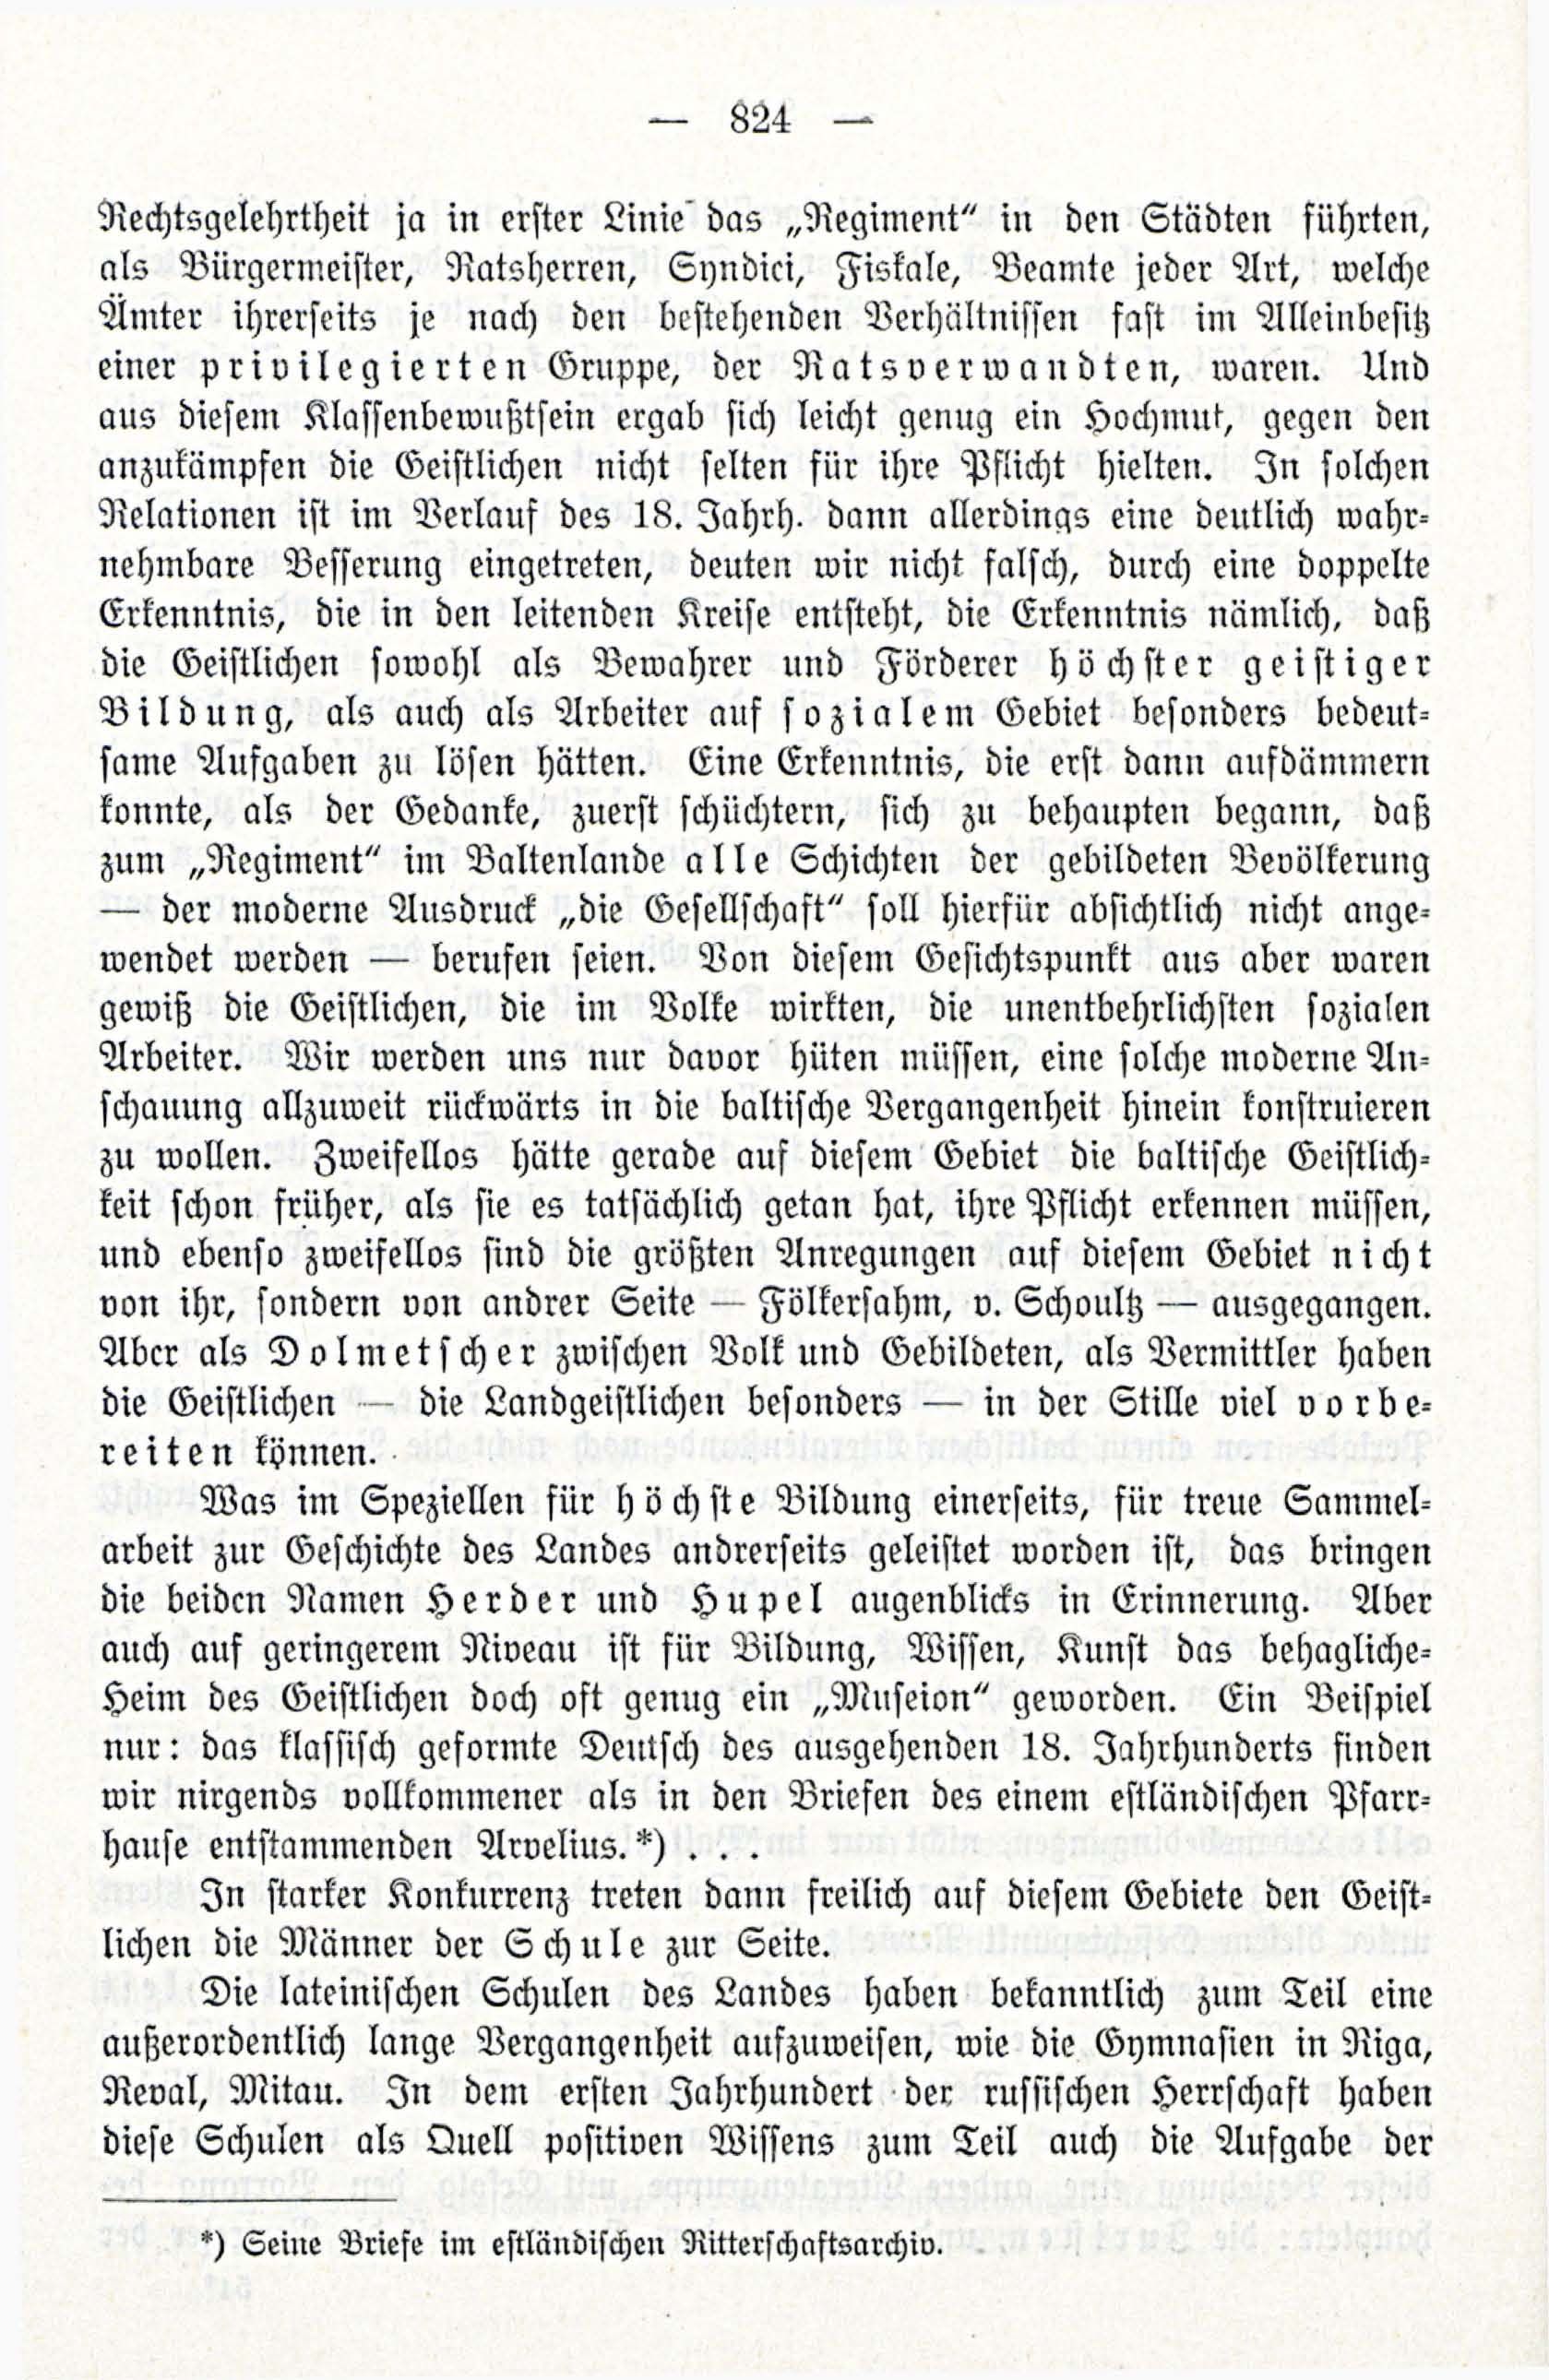 Deutsche Monatsschrift für Russland [3/12] (1914) | 40. (824) Main body of text